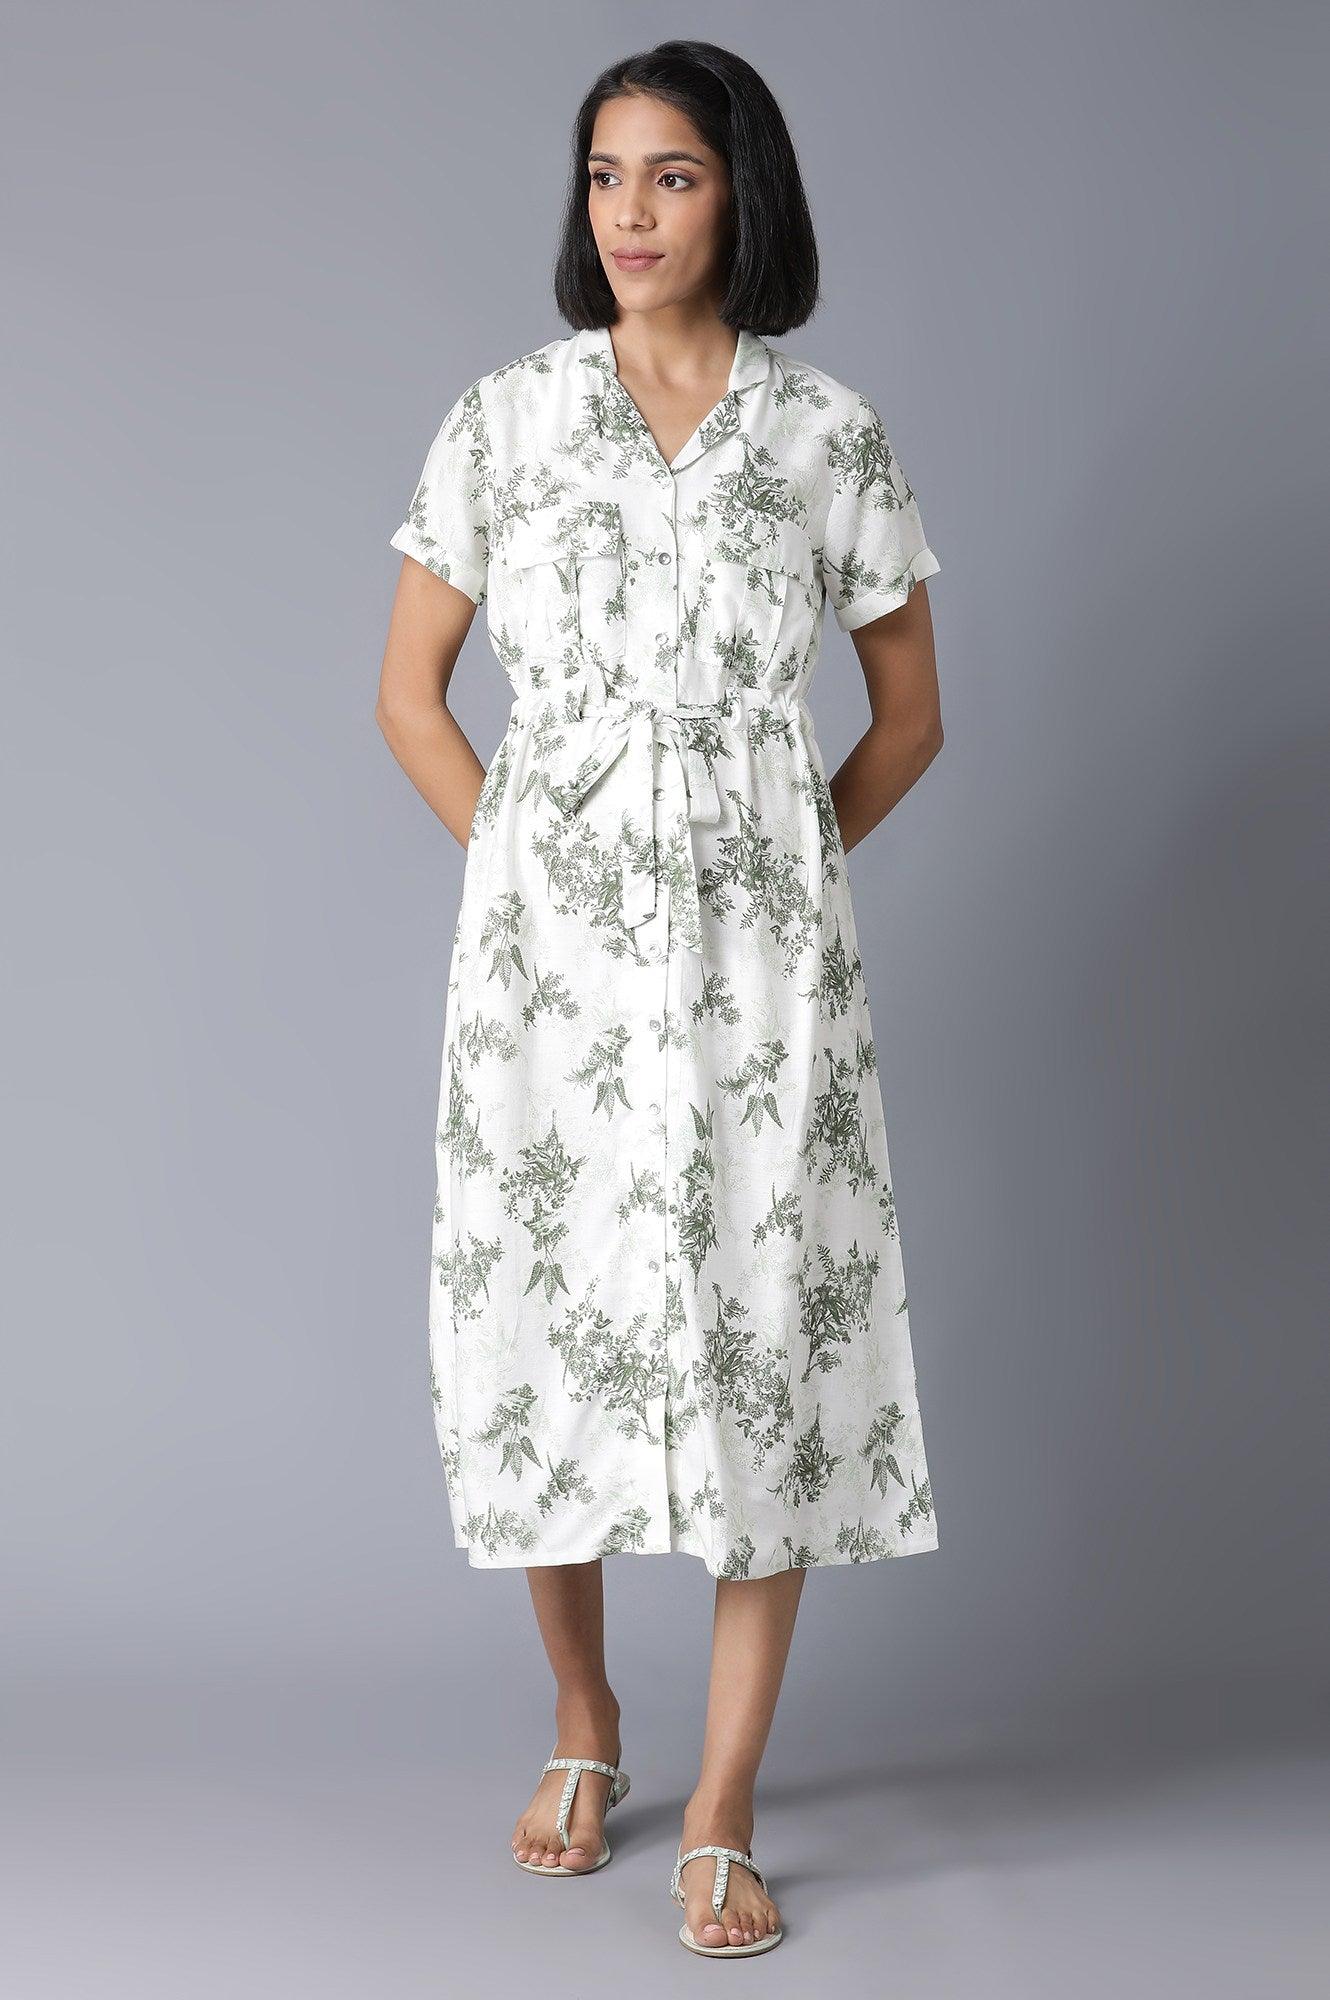 Ecru Floral Print Lapel Collar Dress - wforwoman